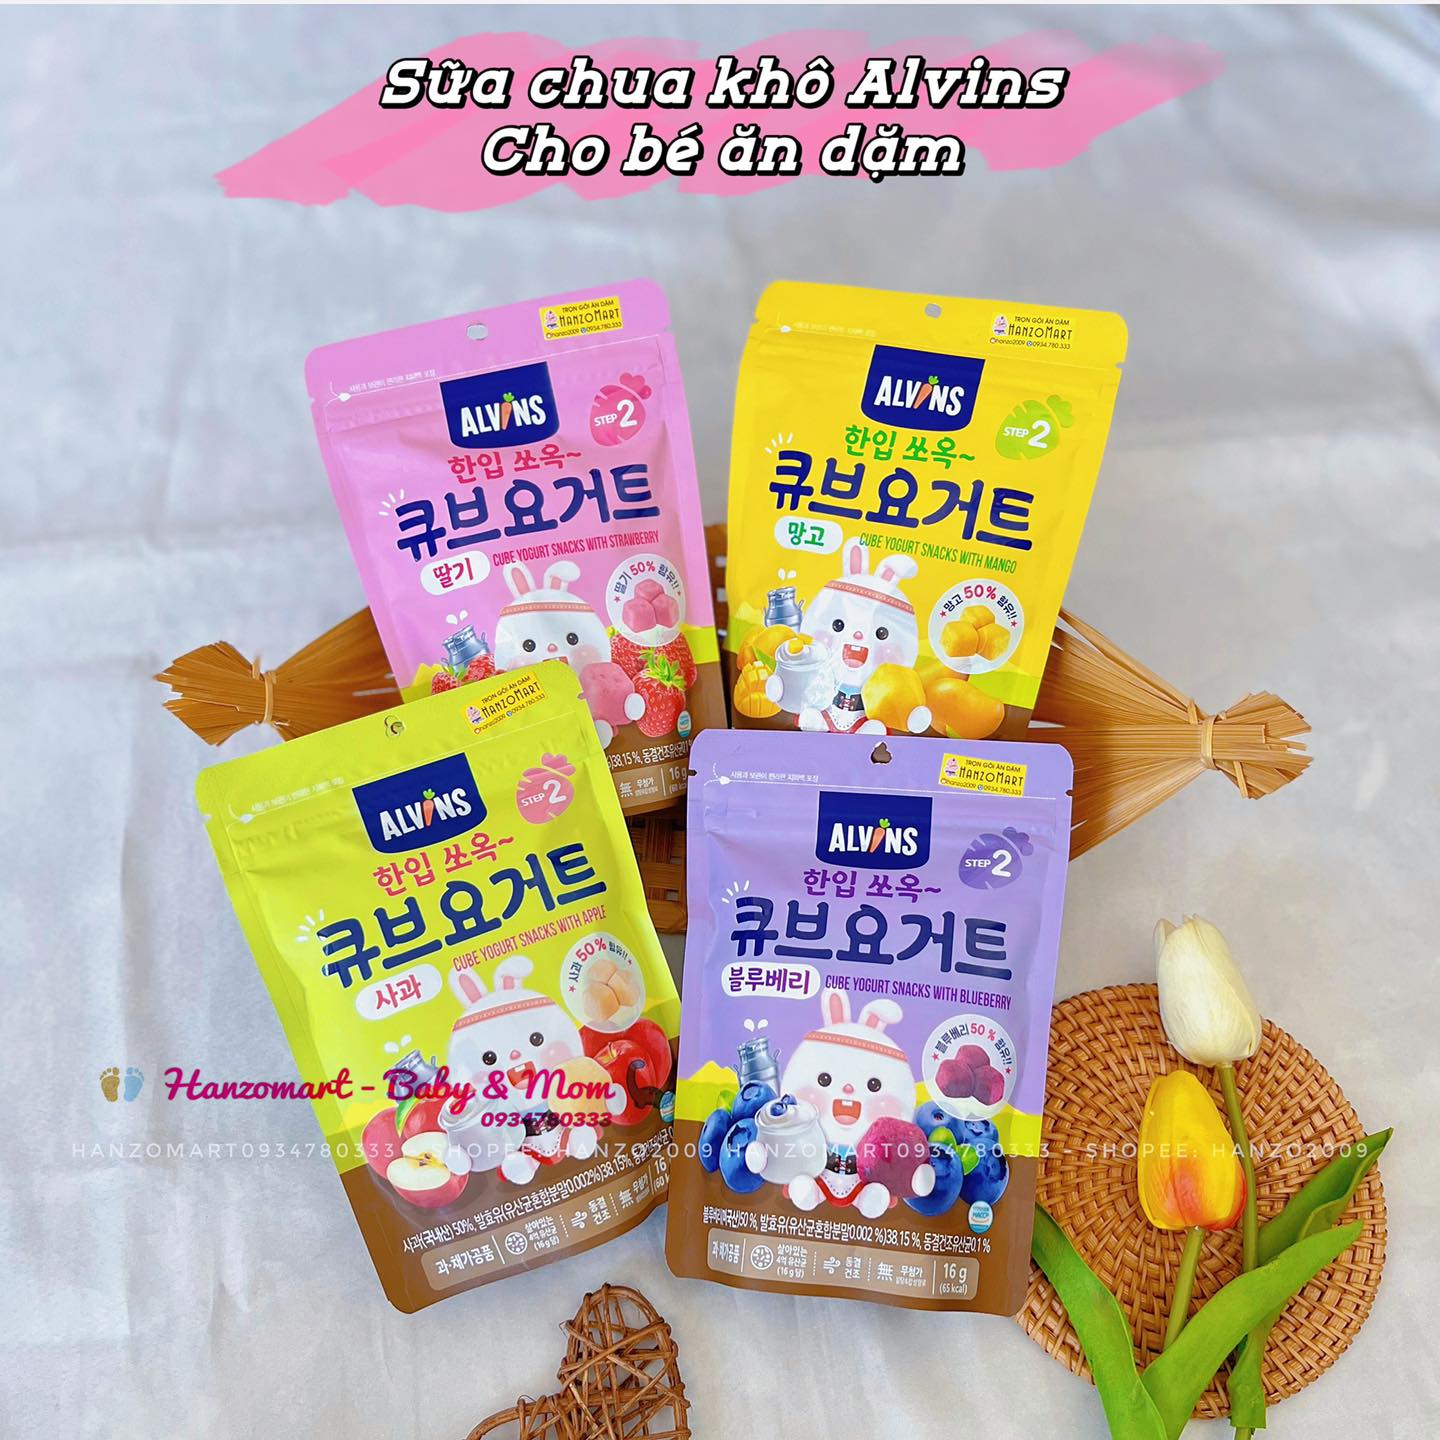 Sữa chua khô sấy lạnh cho bé ăn dặm 7m+ gói zip 16g Hàn Quốc - Alvins